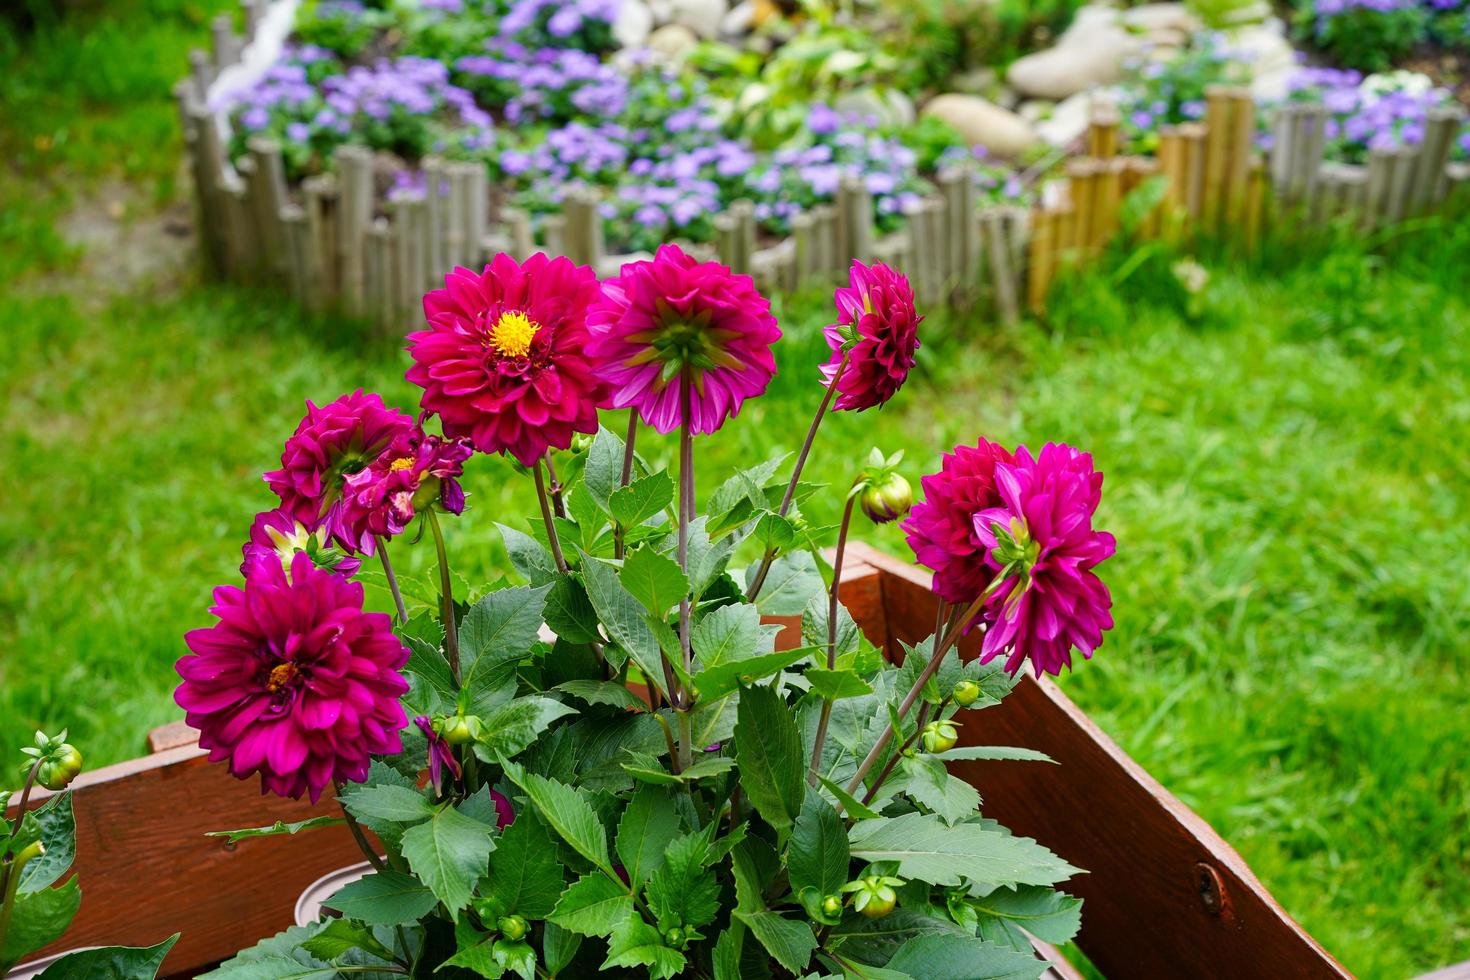 dálias vermelhas em um canteiro de flores em um jardim 2296297 Foto de  stock no Vecteezy